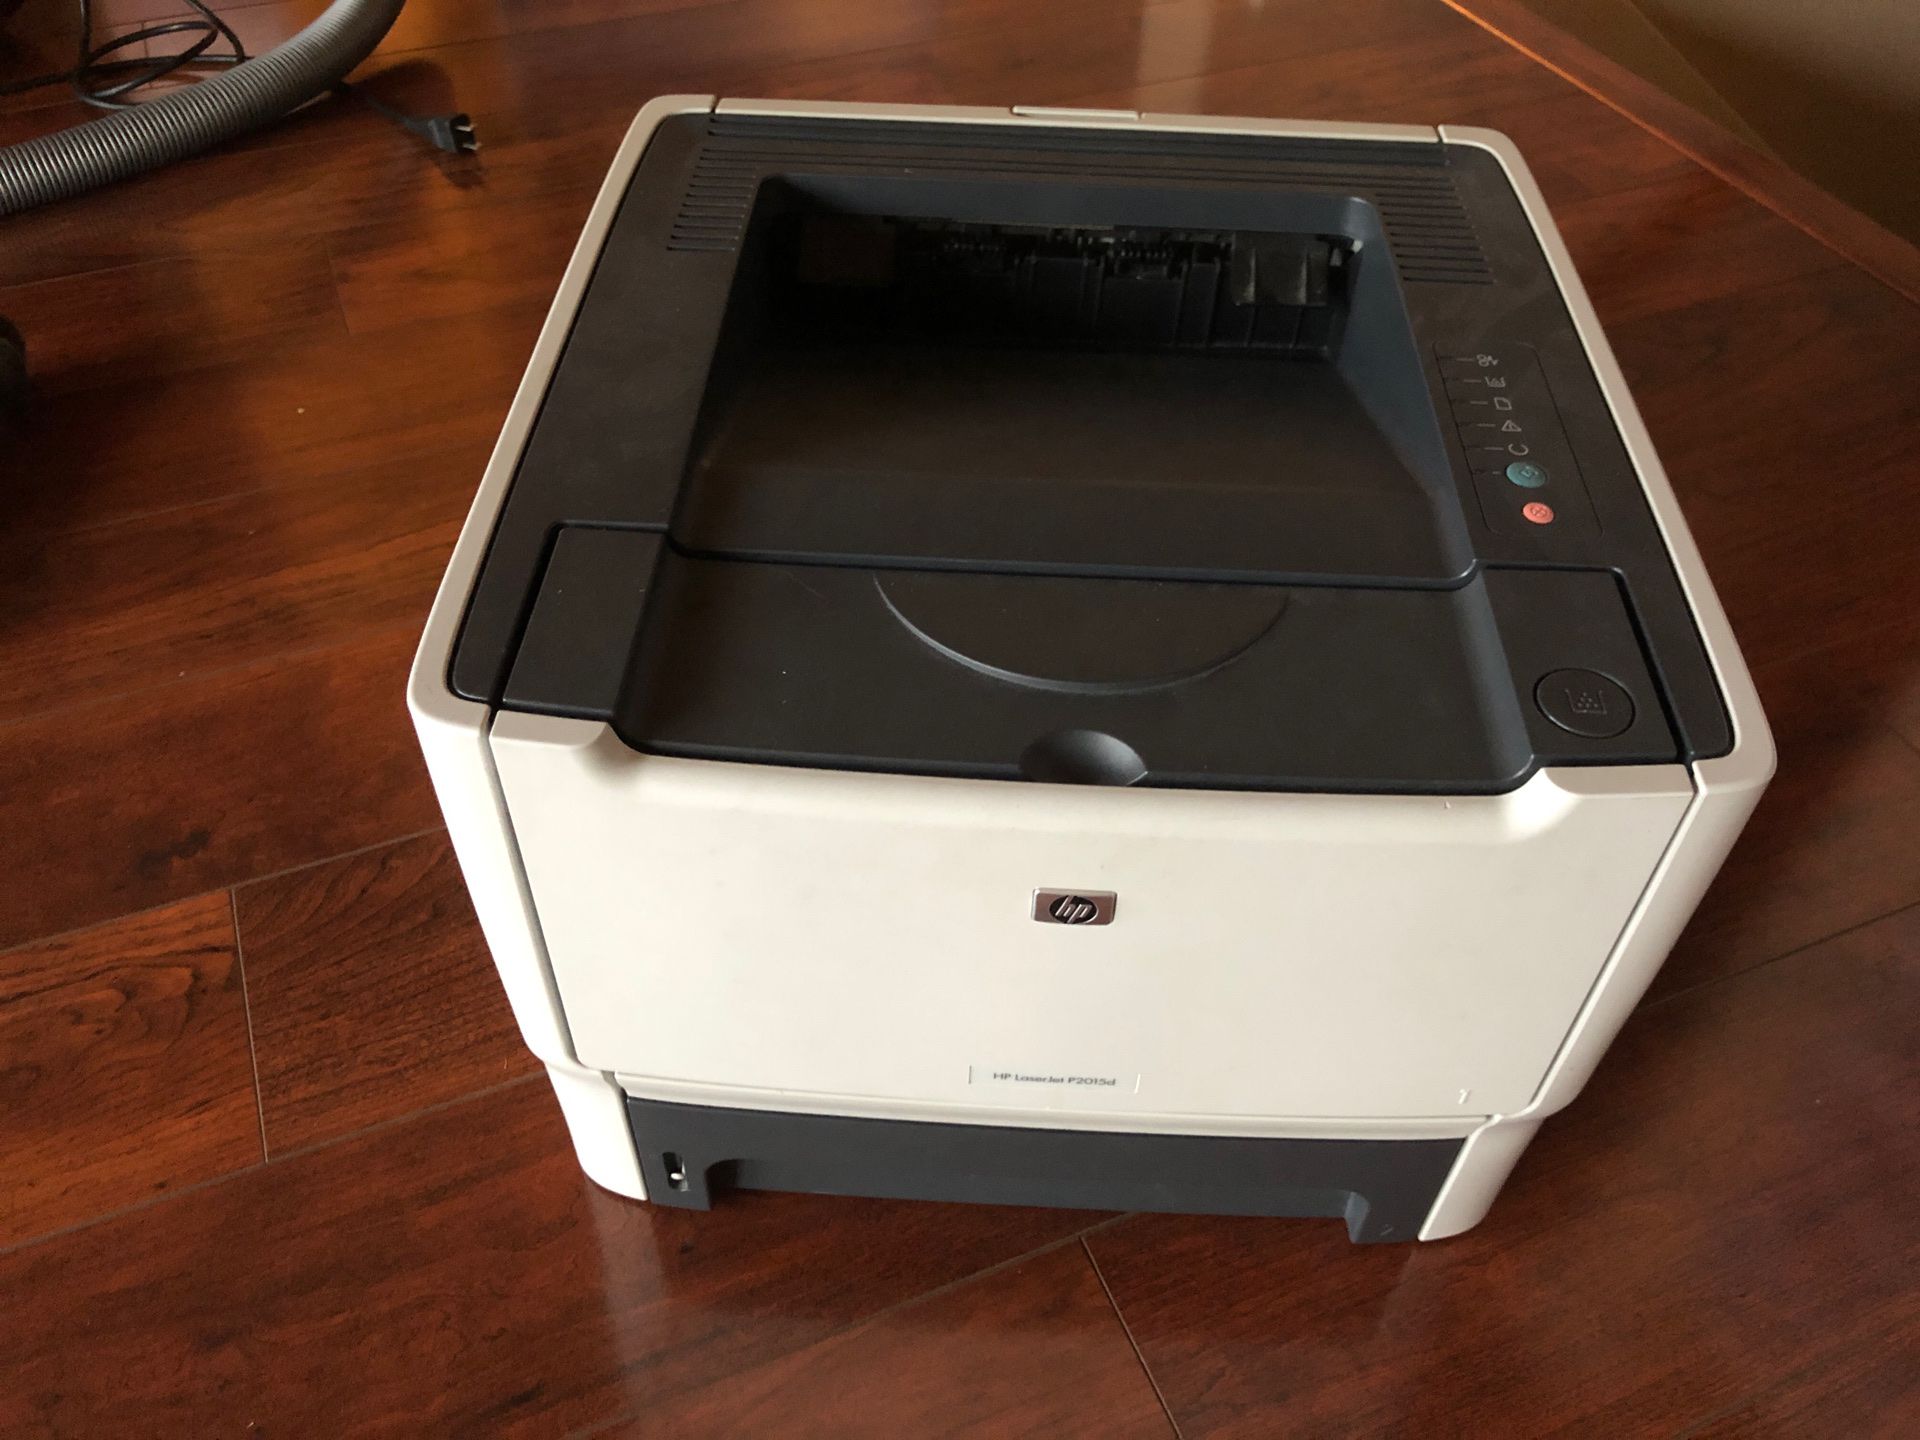 Free HP Laser Printer